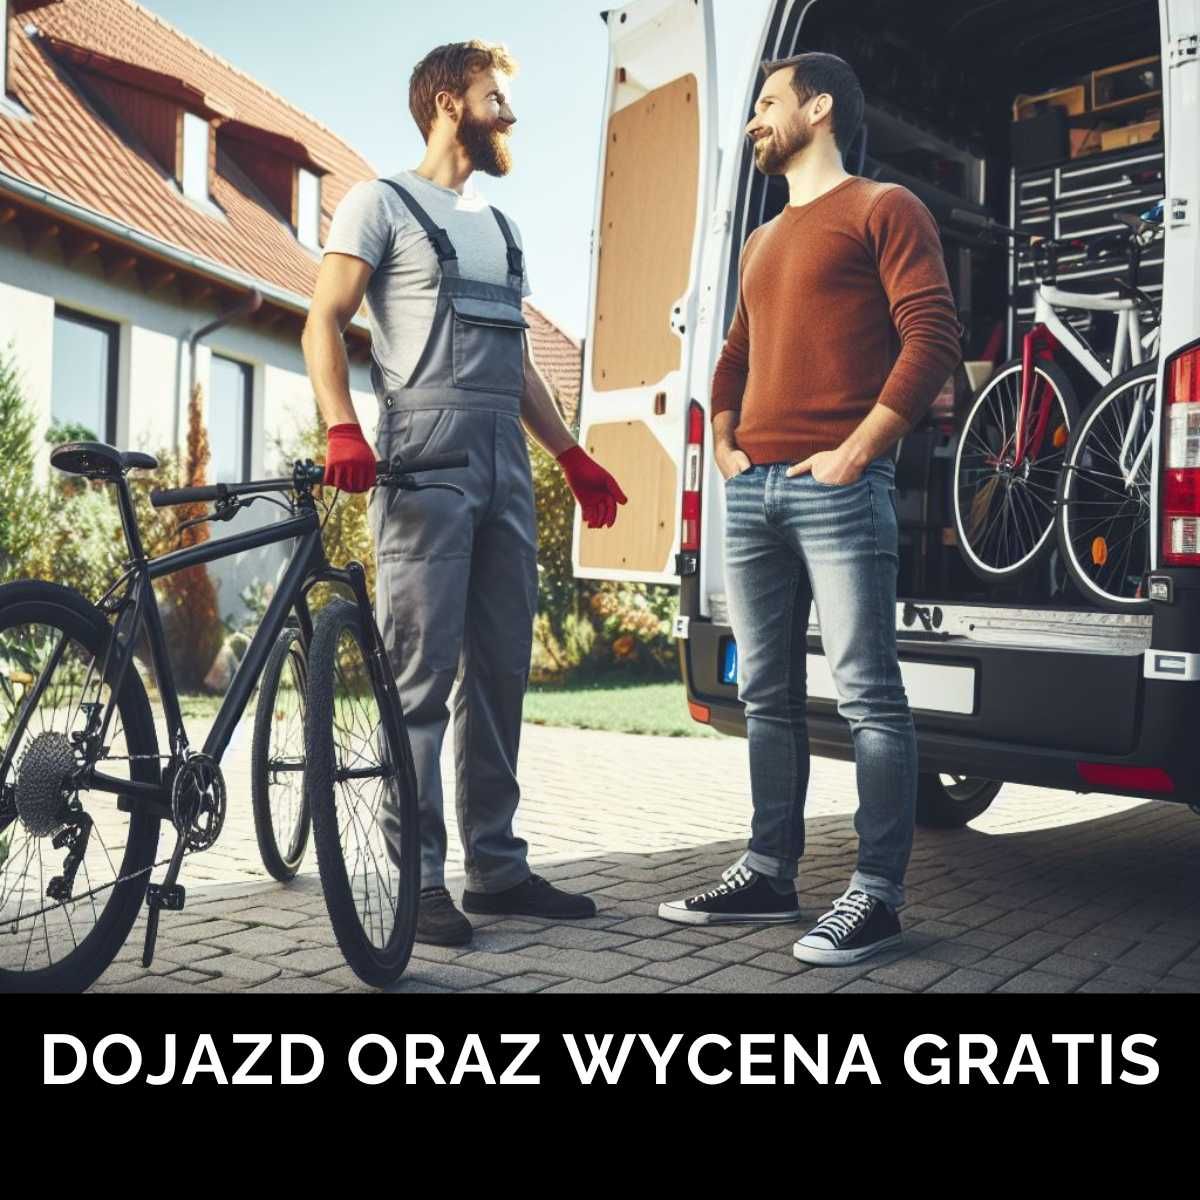 Serwis rowerowy/naprawa rowerów - Łódź, Zgierz i okolice